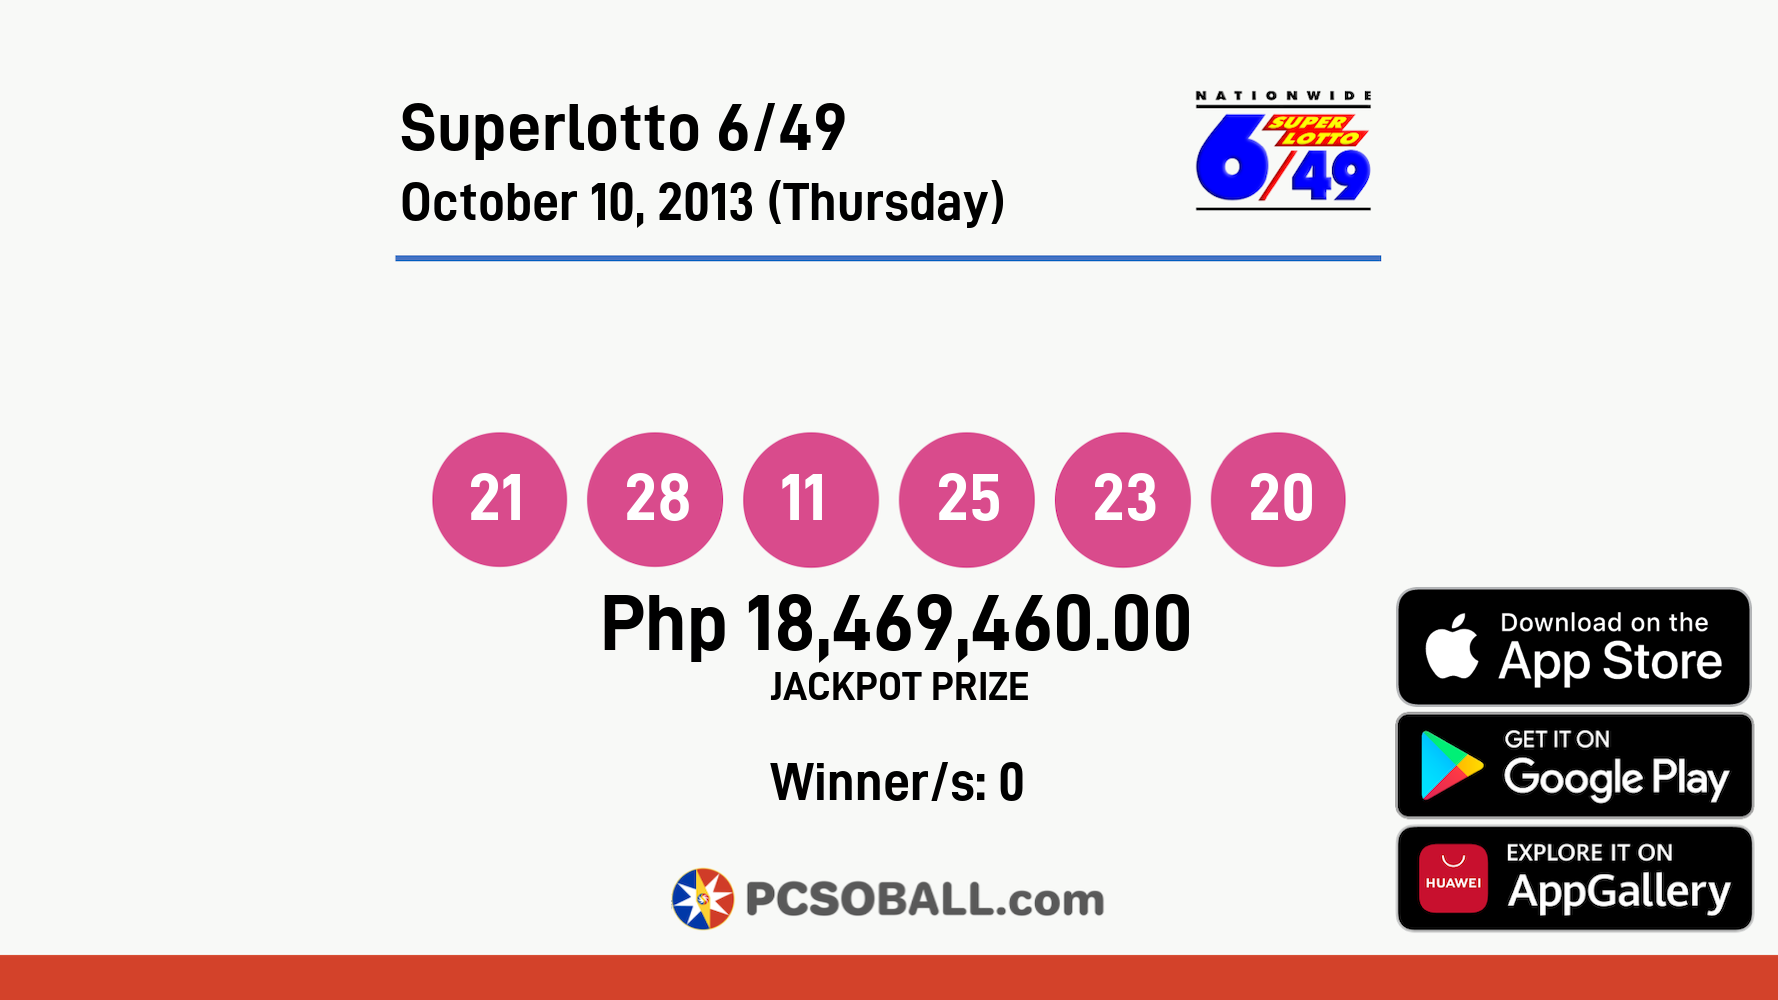 Superlotto 6/49 October 10, 2013 (Thursday) Result